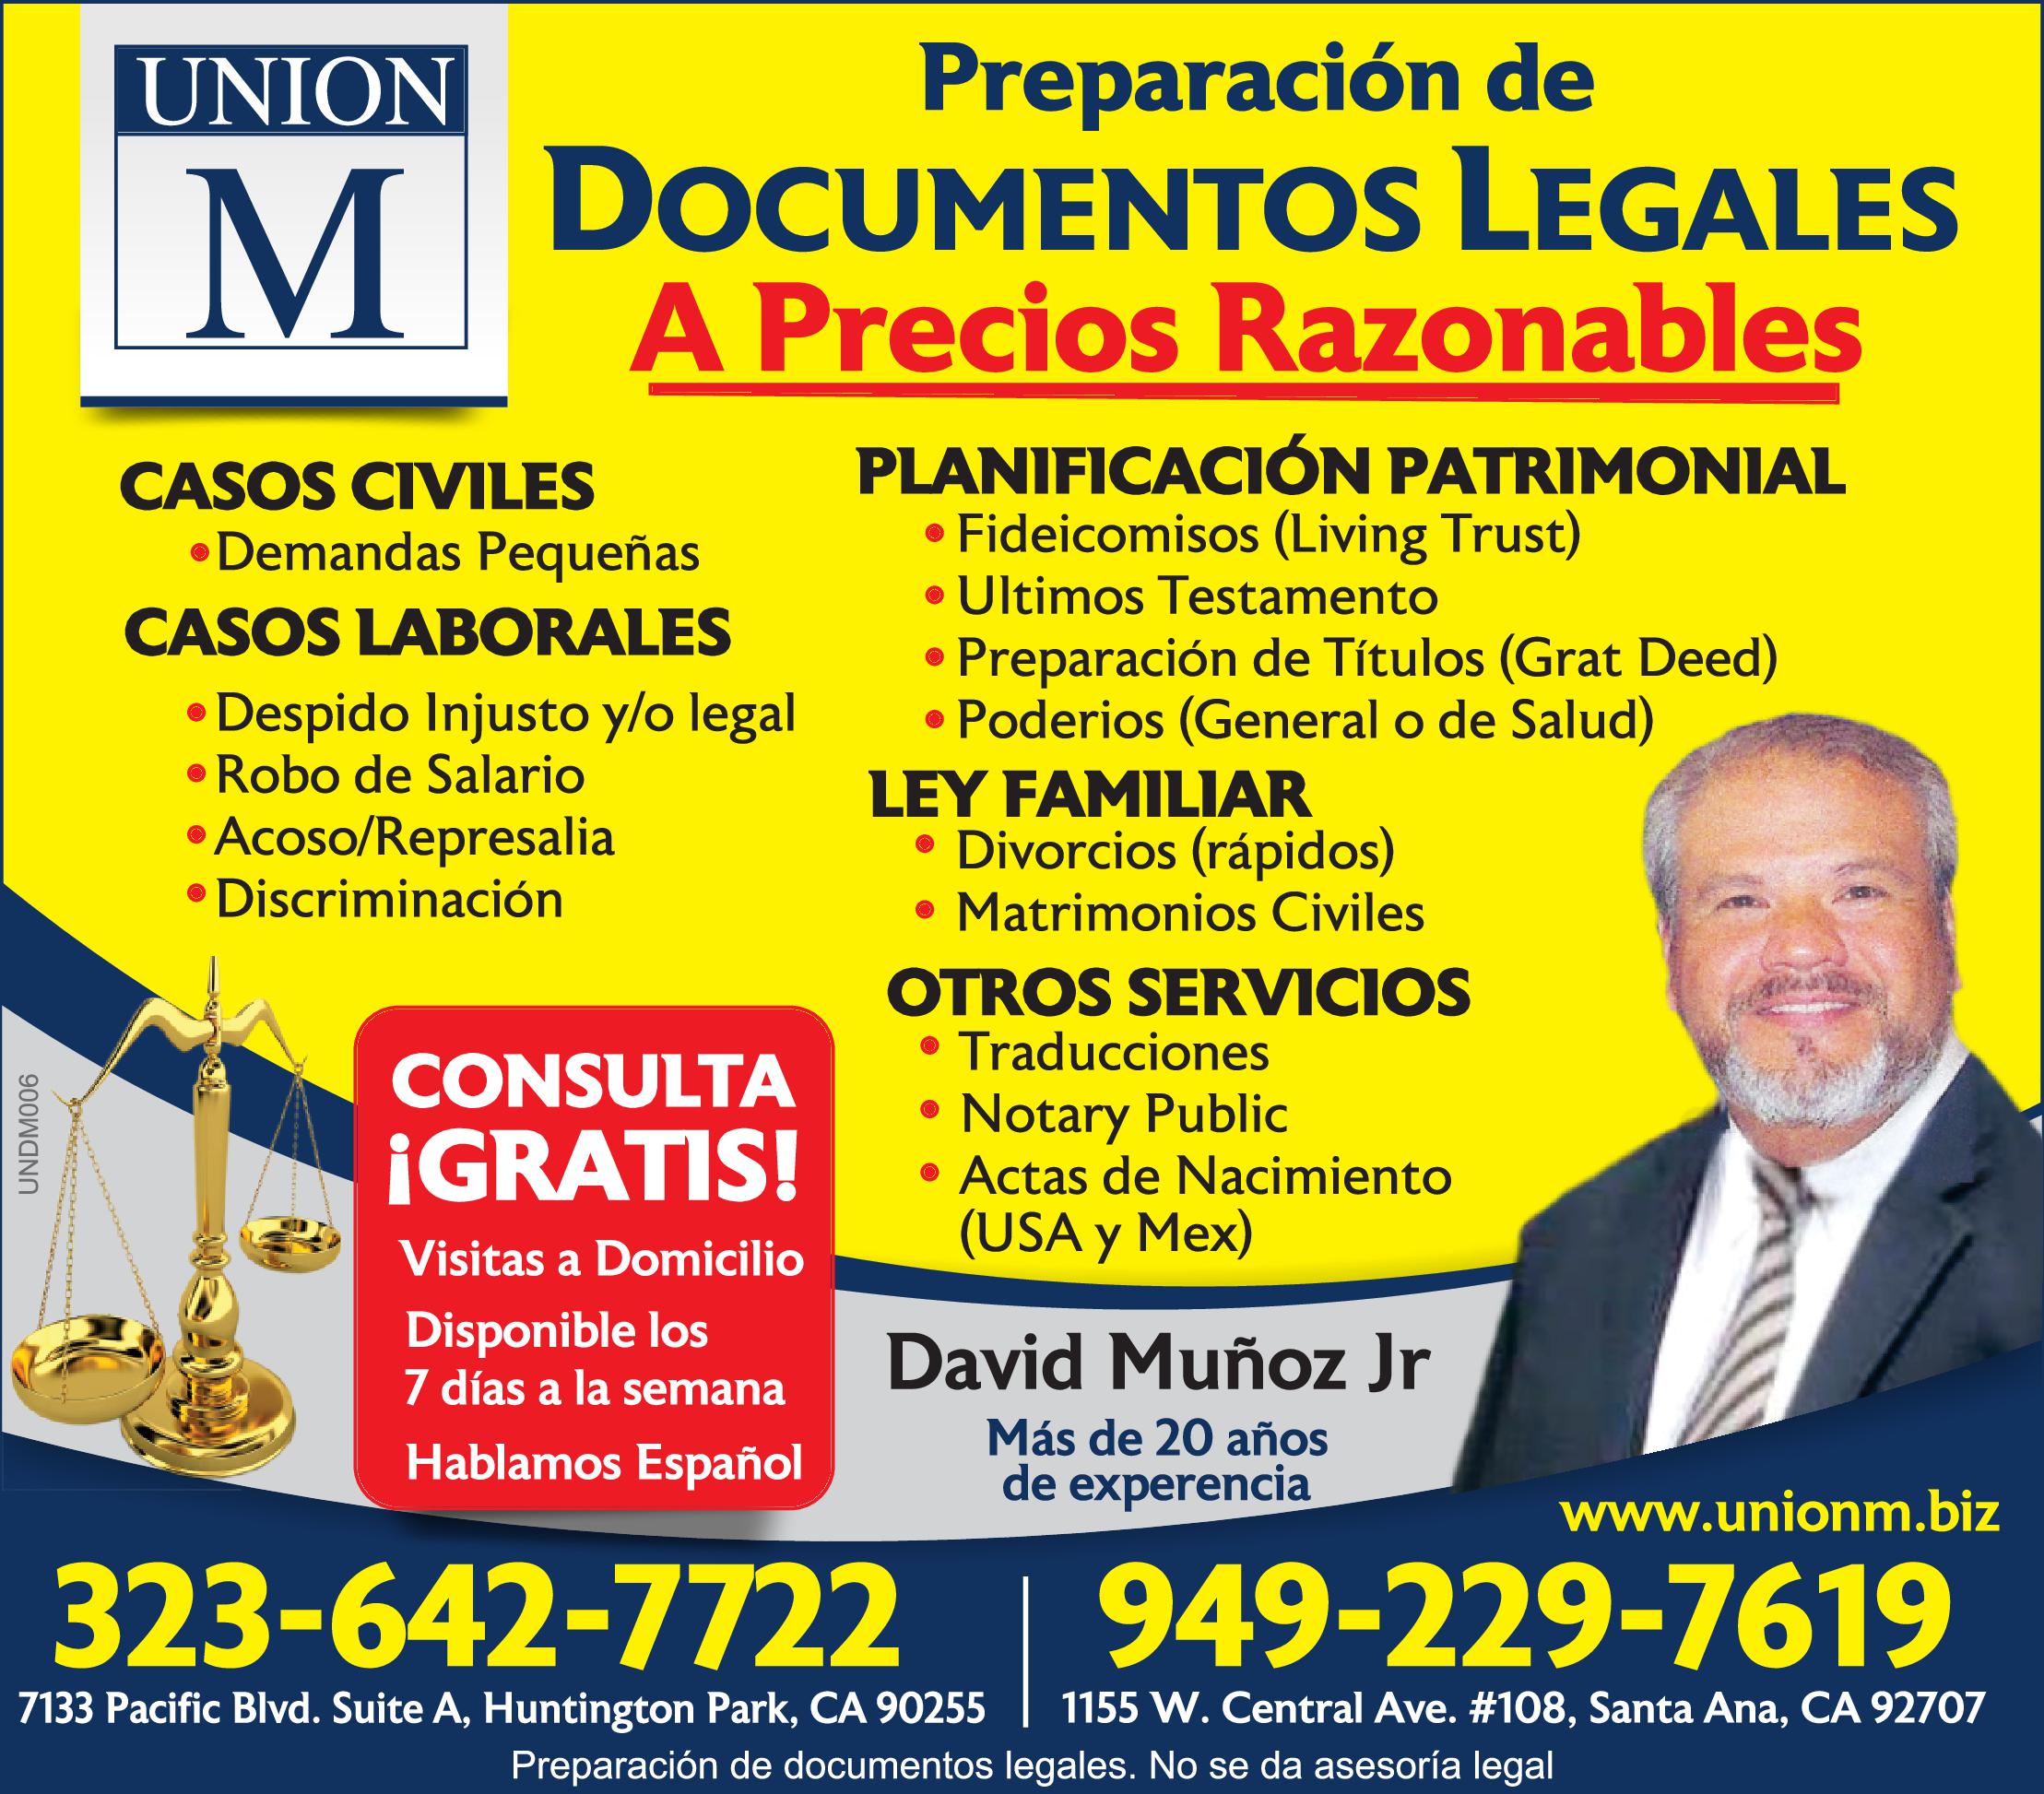 Union M Documentos Legales